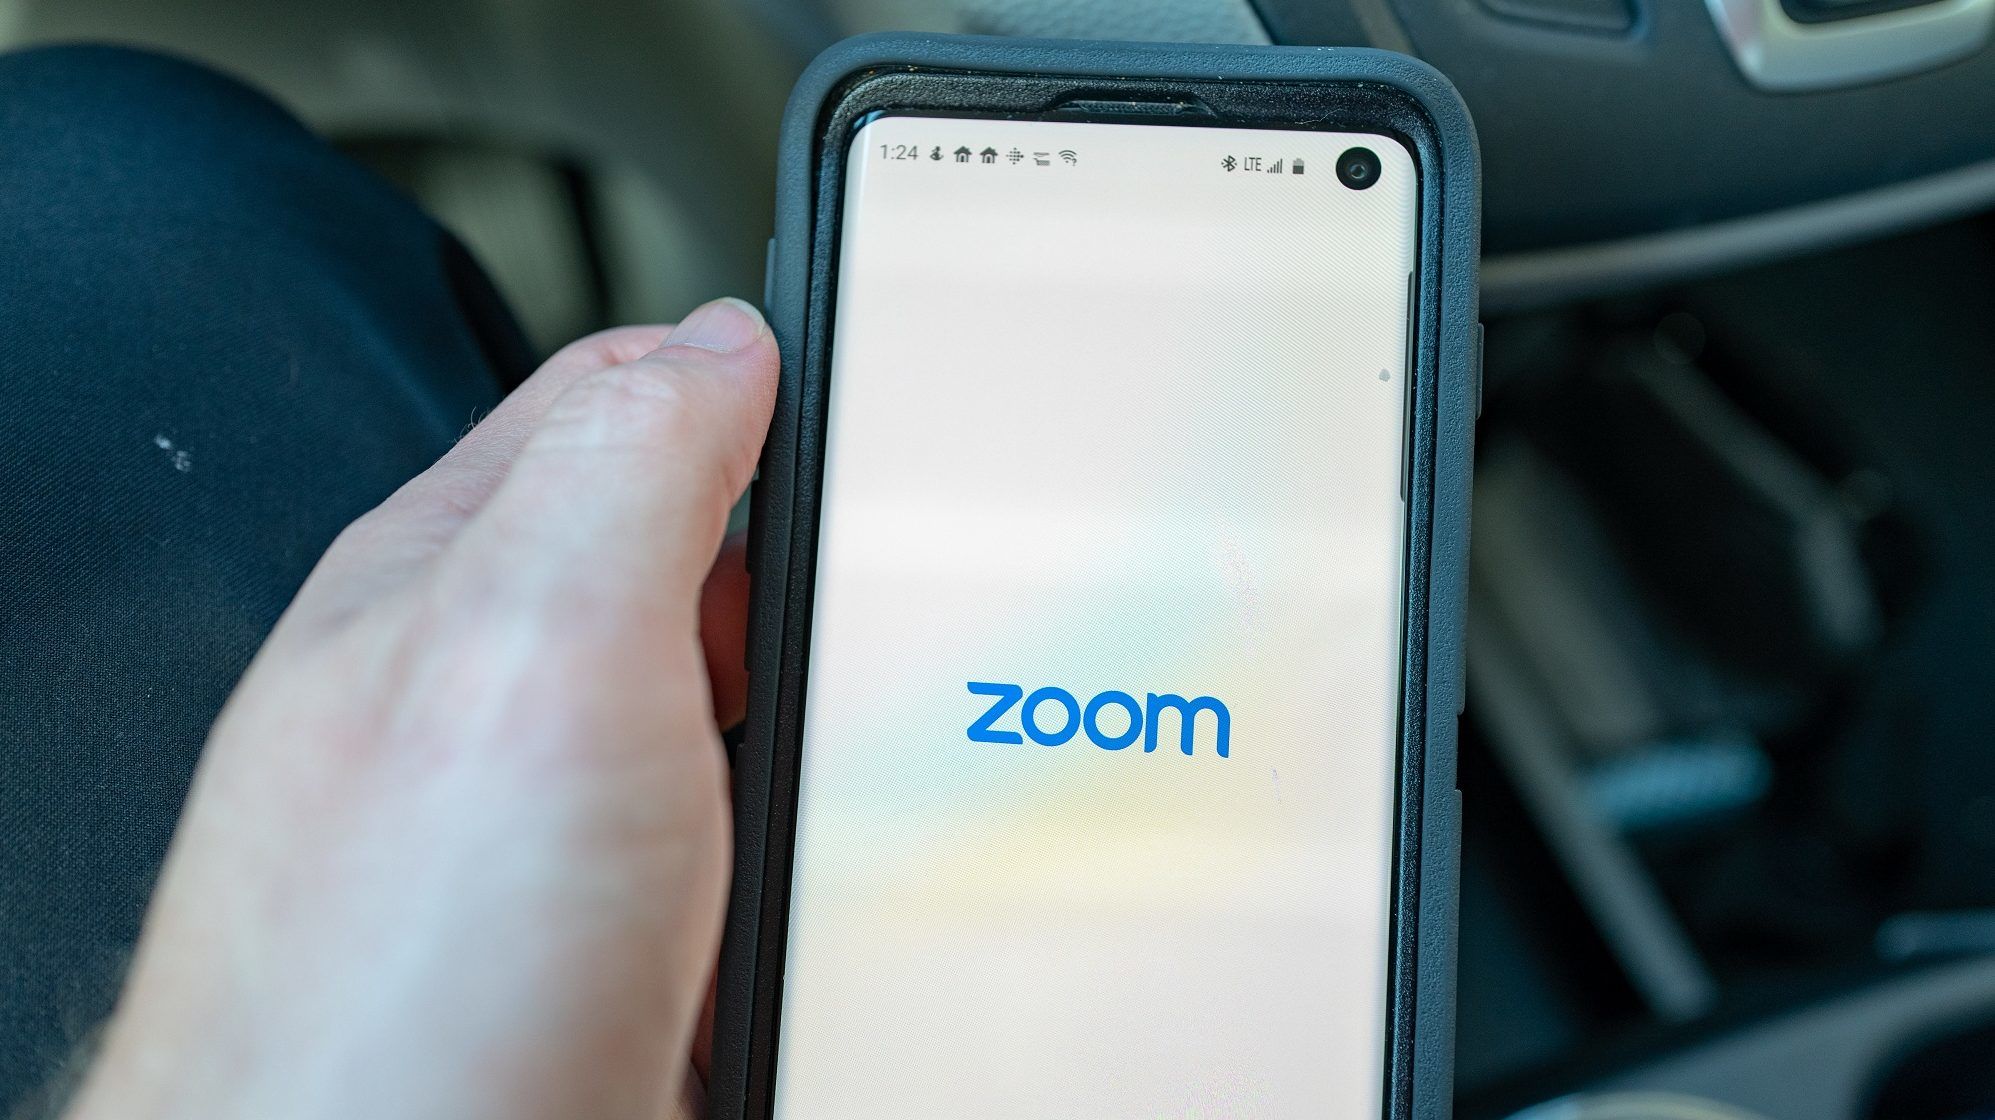 Sok baj van a Zoom nevű alkalmazással